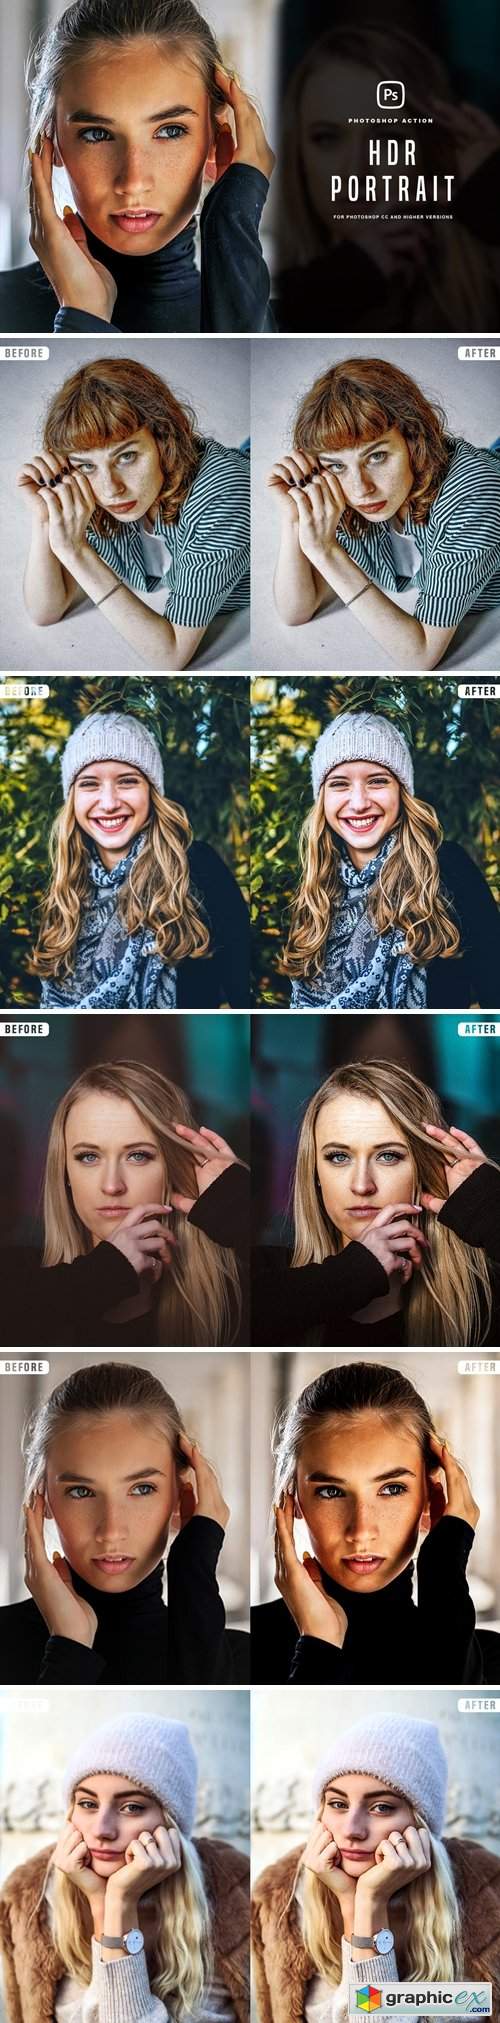 HDR Portrait Photoshop Action 